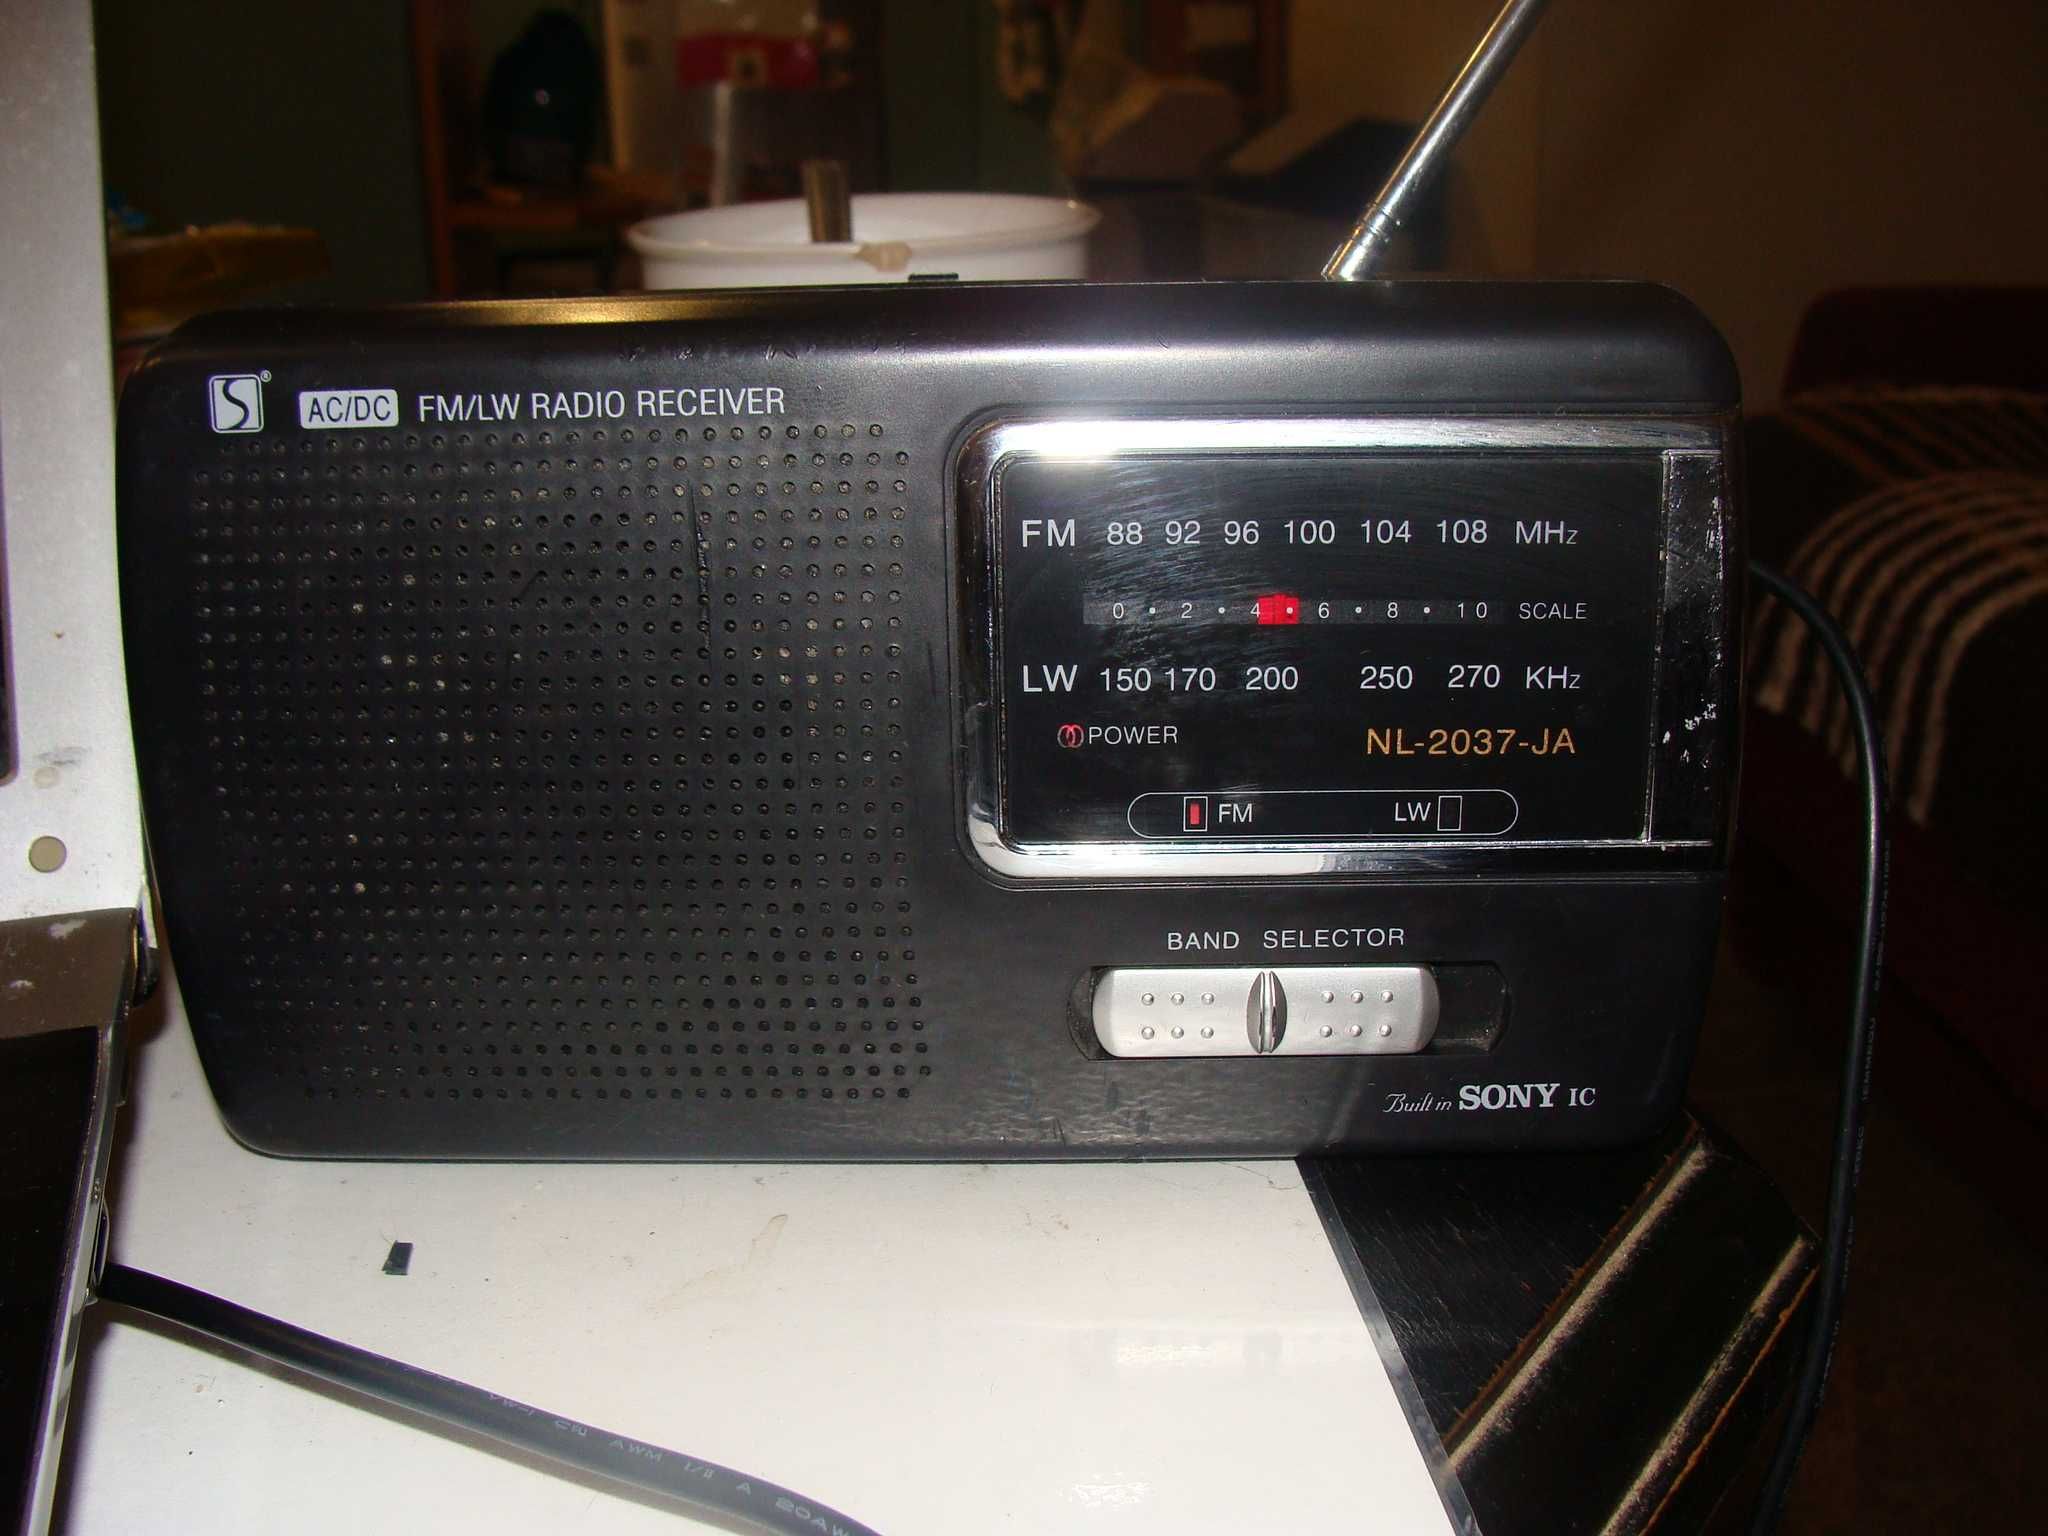 Radio przenośne Sony NL-2037-JA